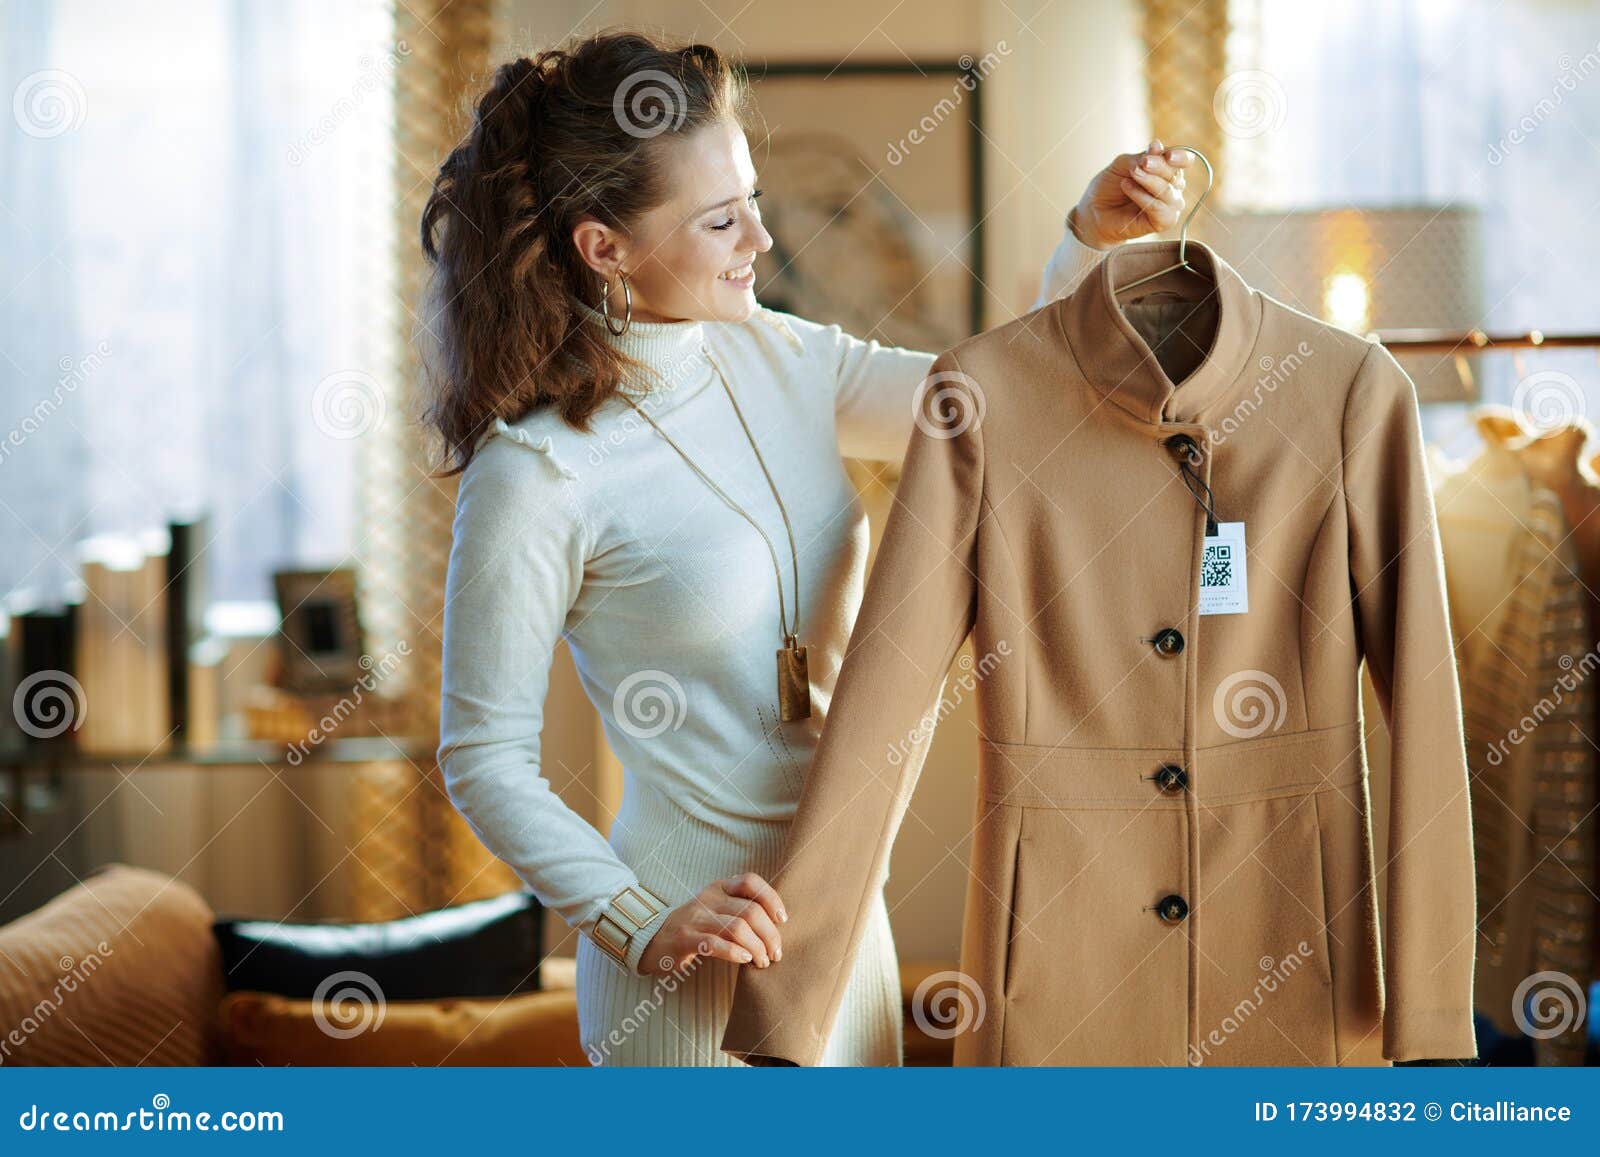 Smiling Modern Female Holding on Hanger Purchased New Coat Stock Photo ...